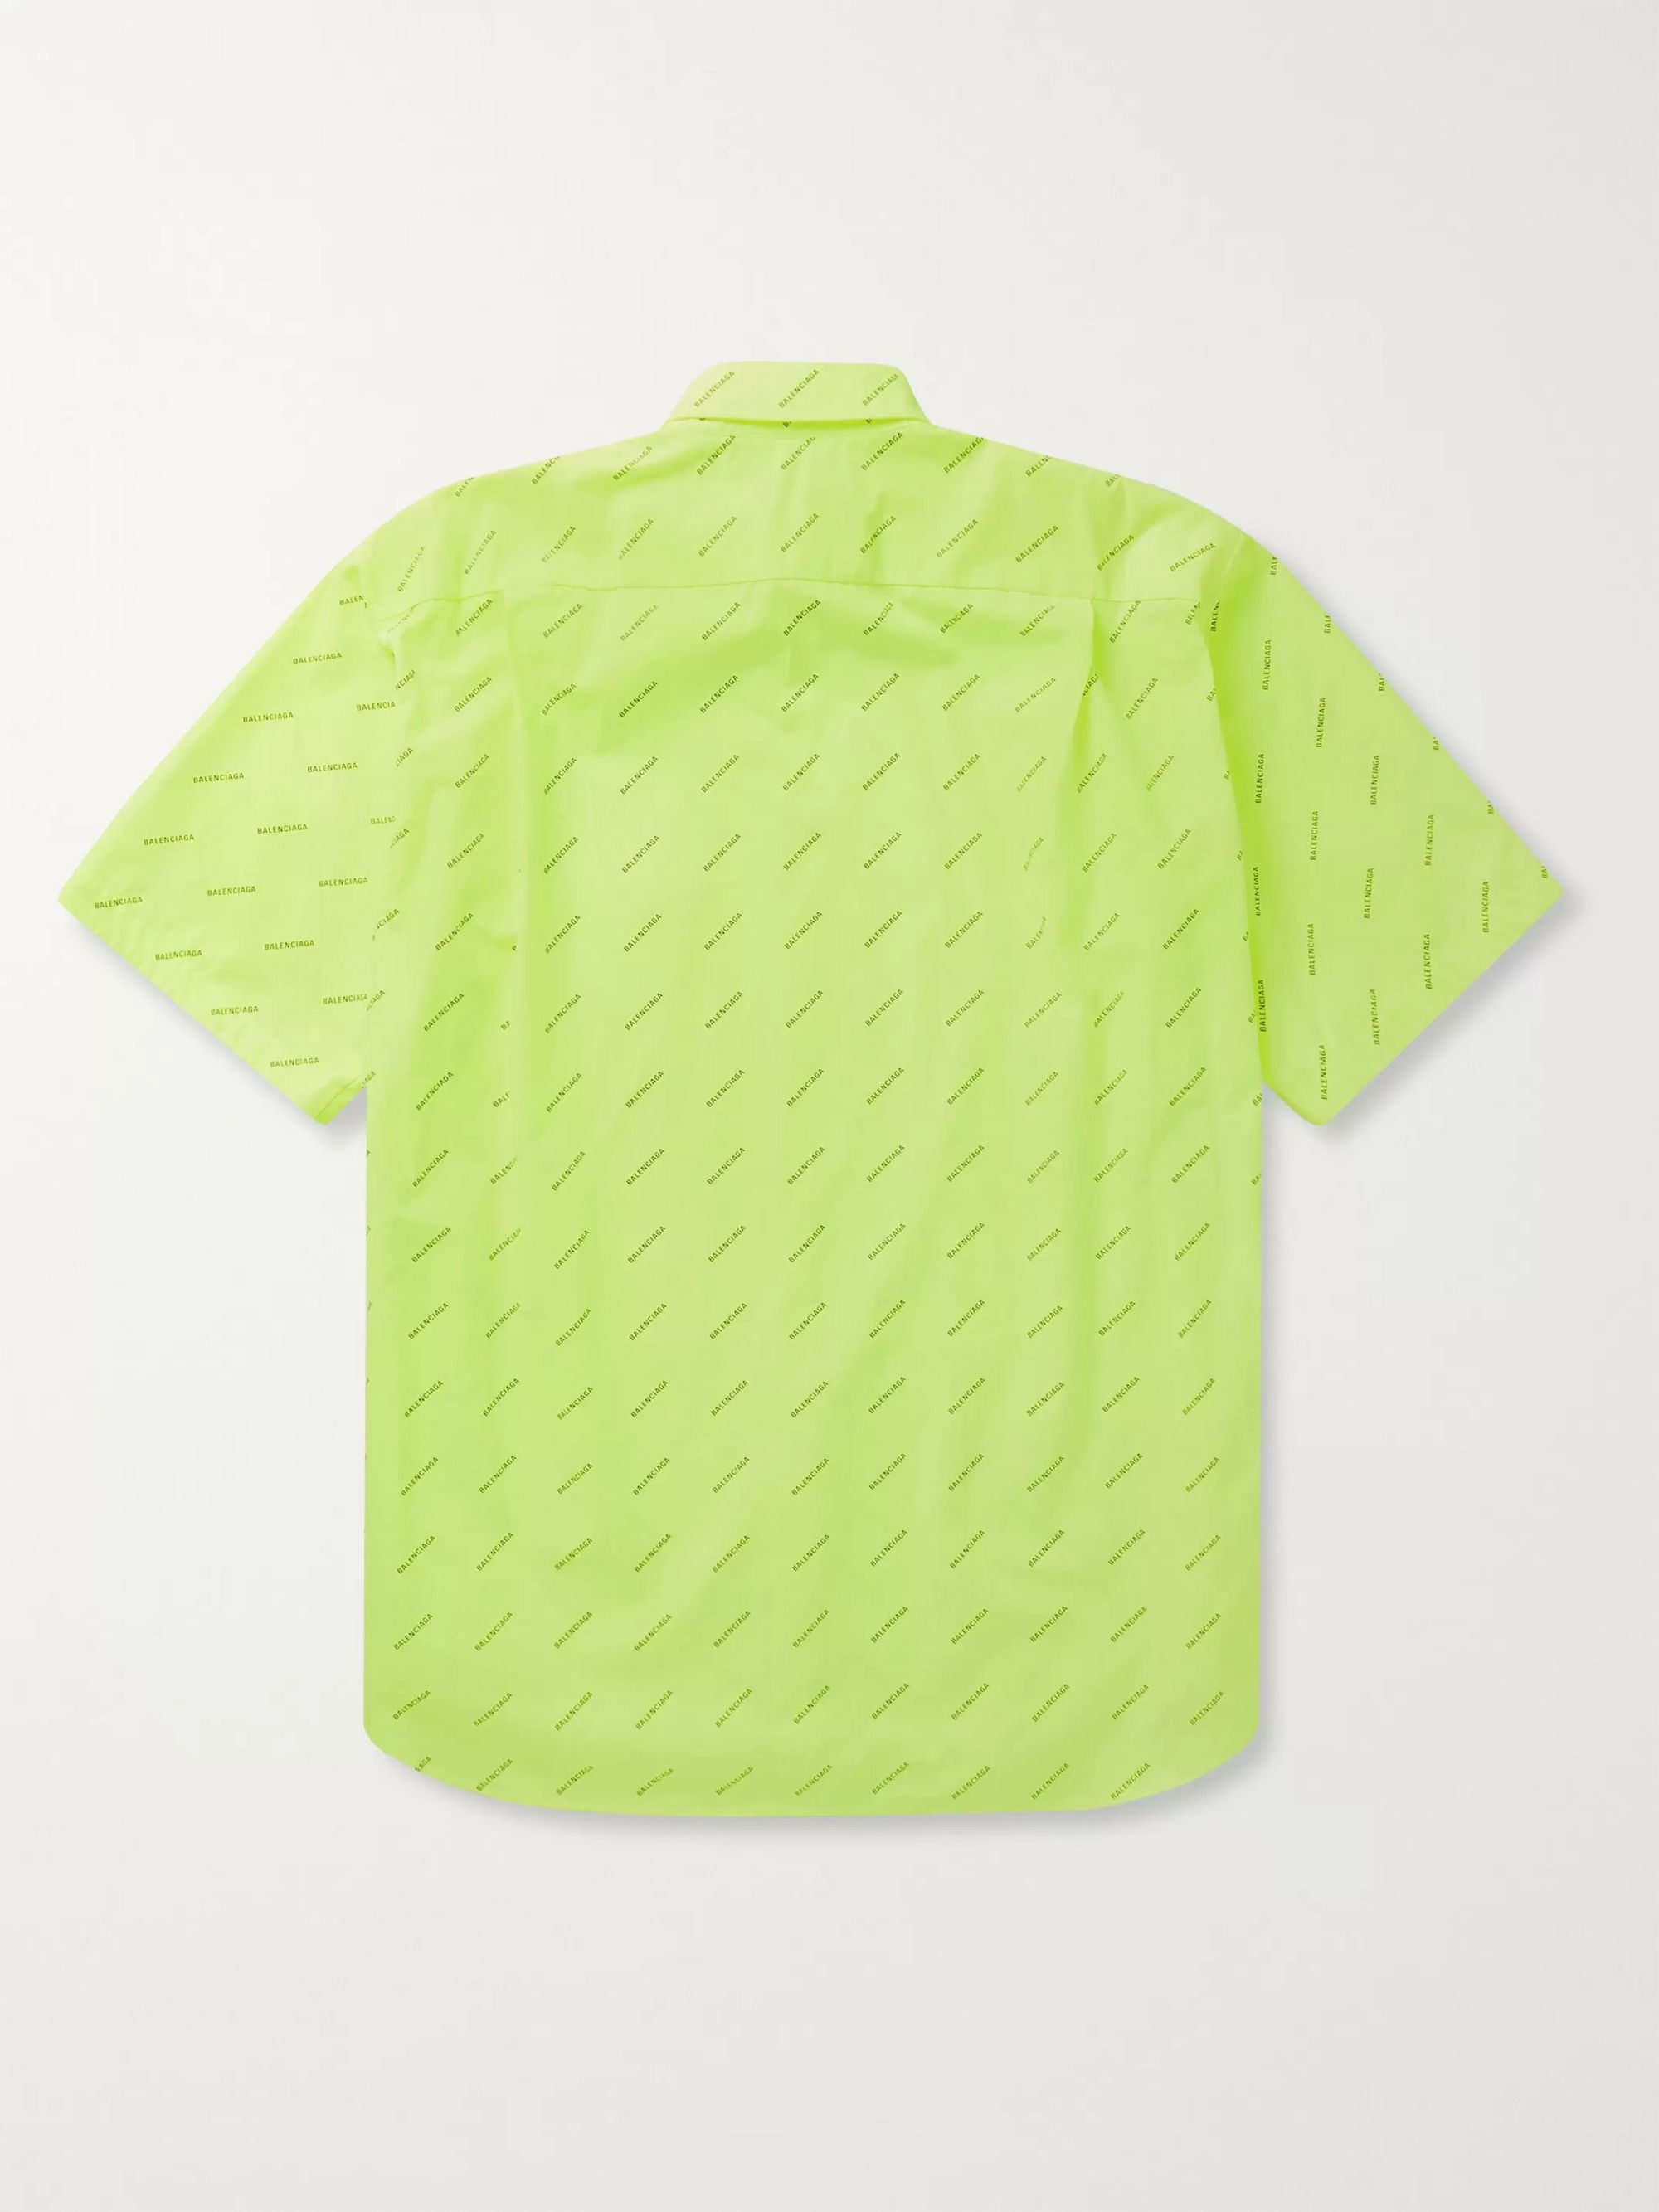 balenciaga neon shirt